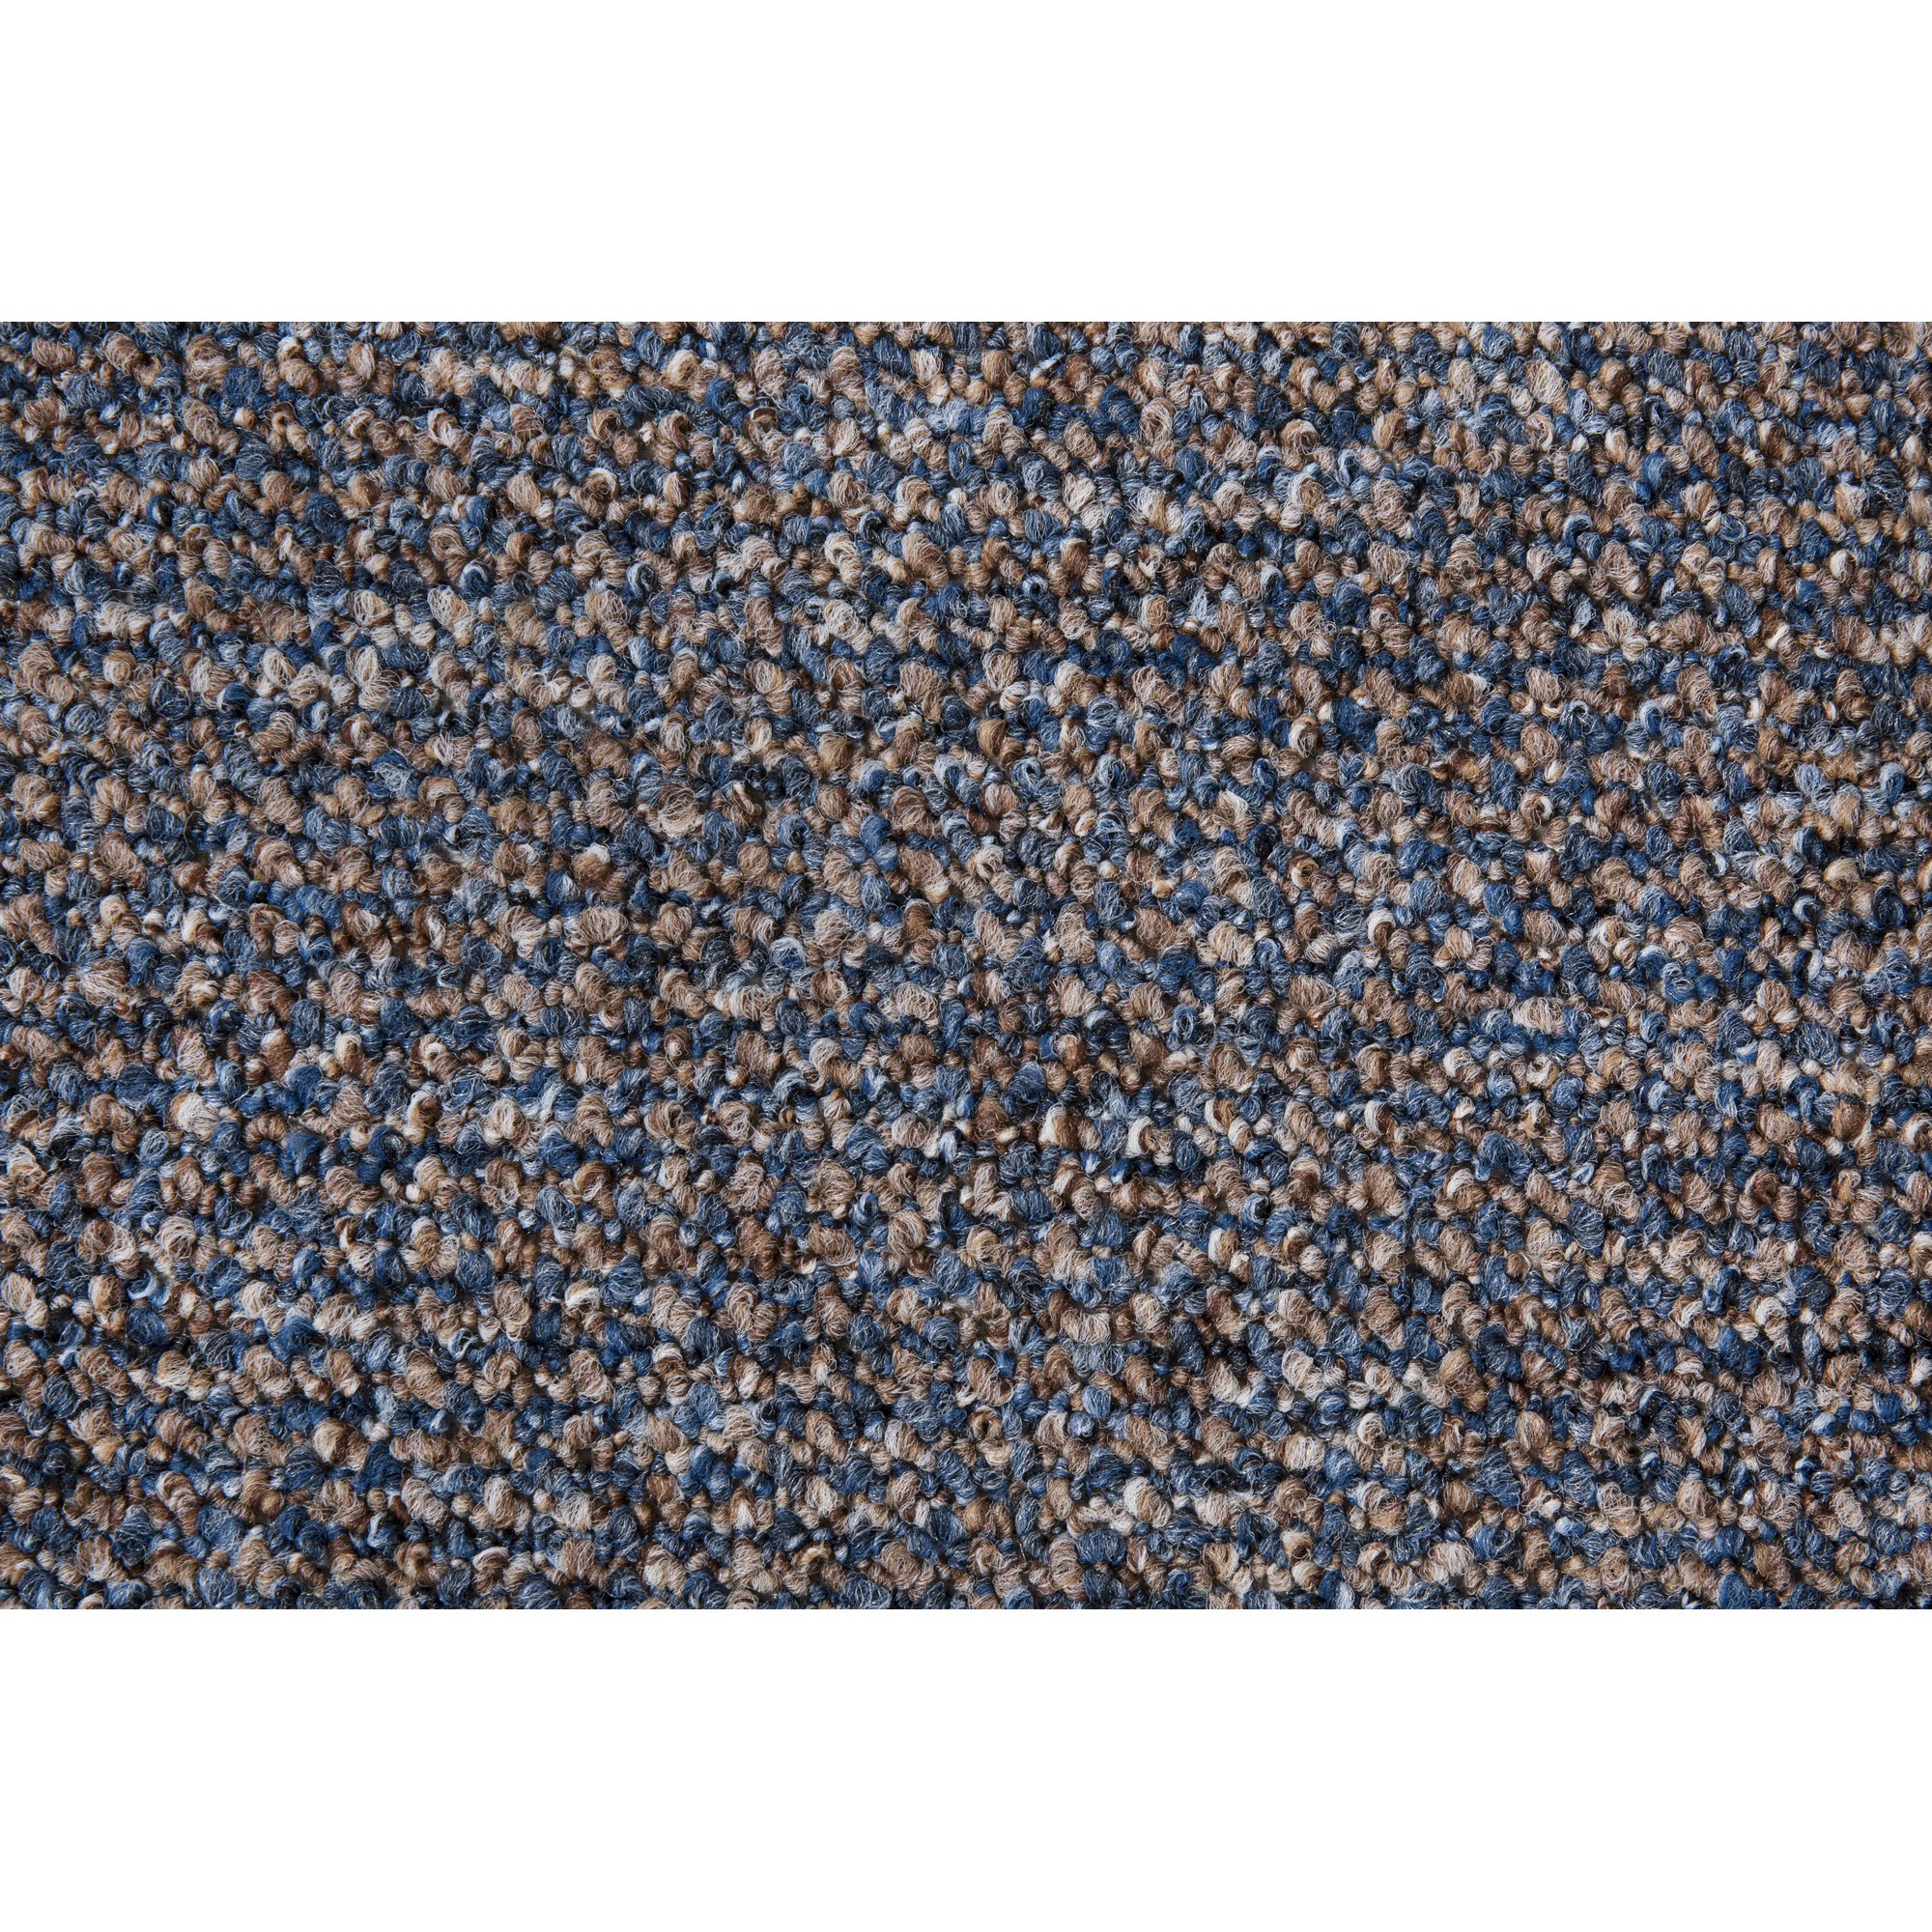 Reinkemeier Schlingen-Teppich "Bennet" Blau, 4m + product picture